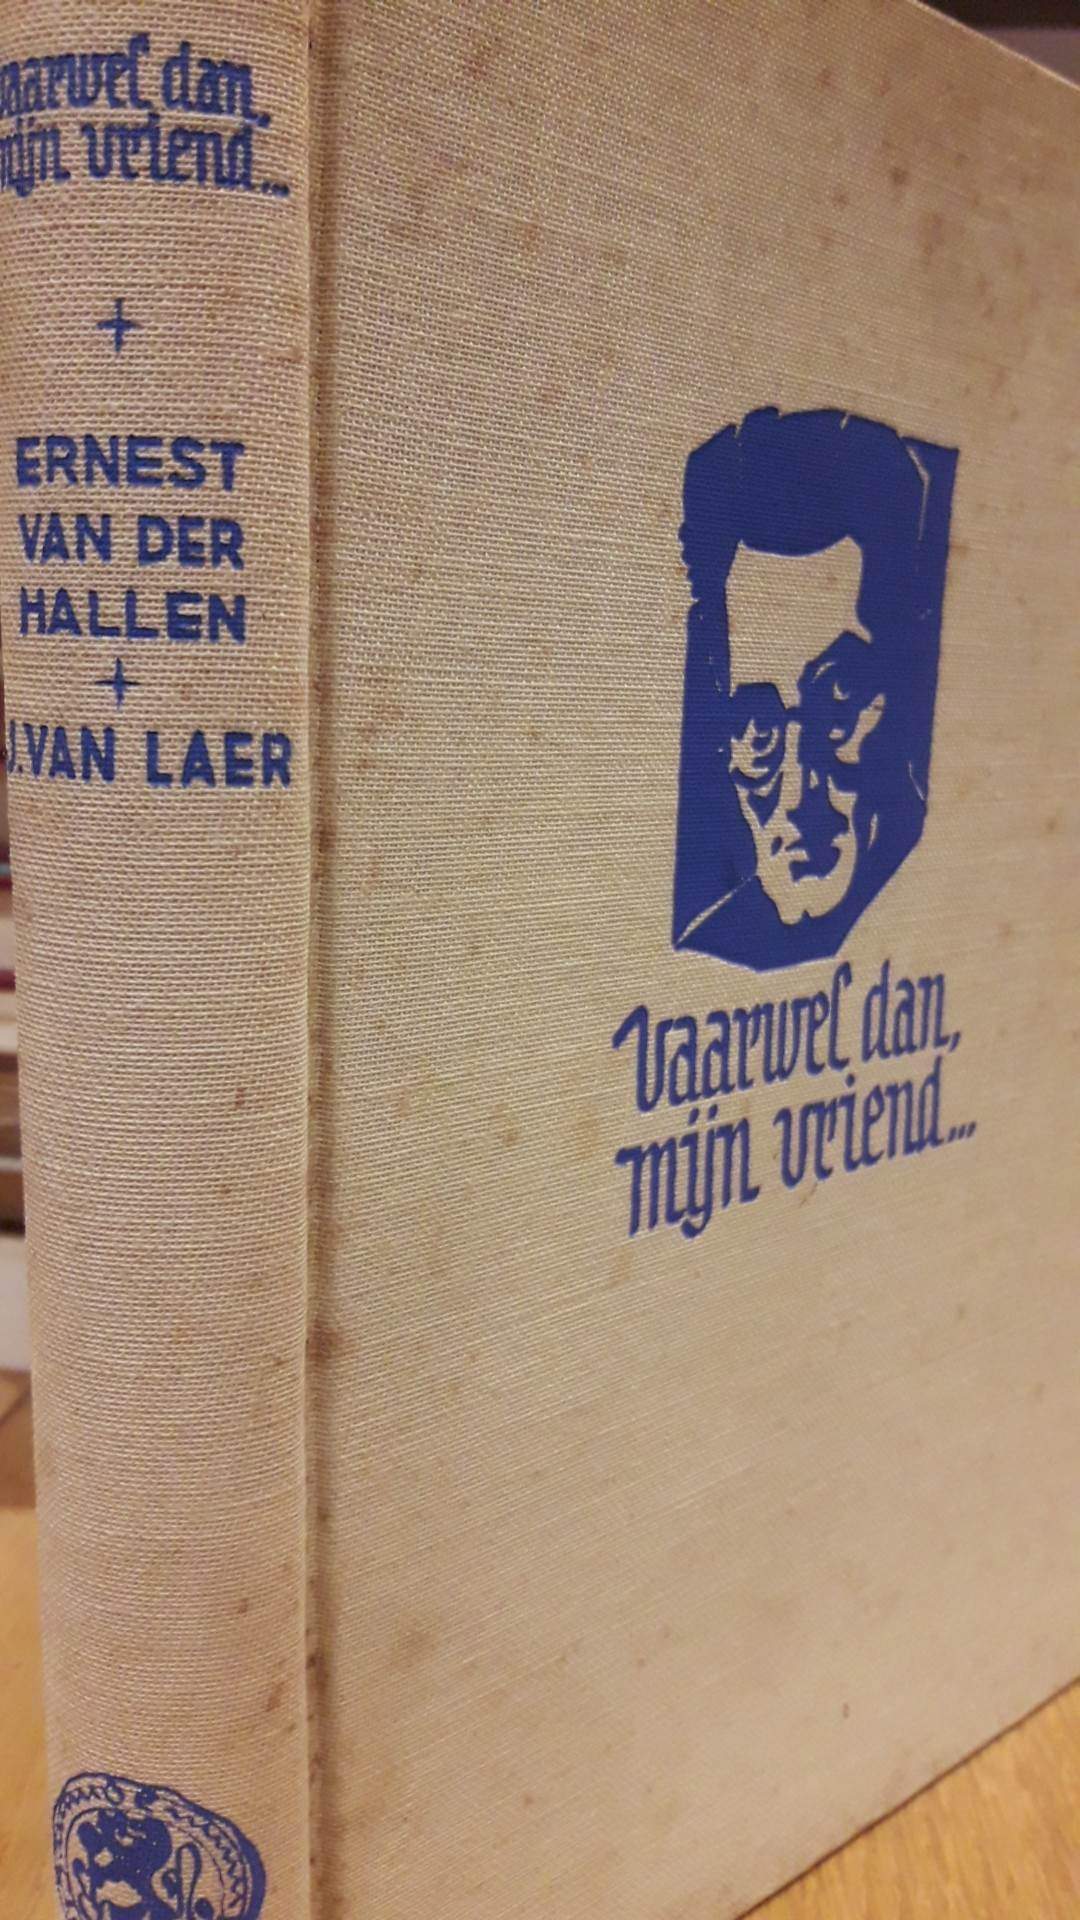 Ernest van der Hallen -  Vaarwel dan mijn goede vriend  / 255 blz